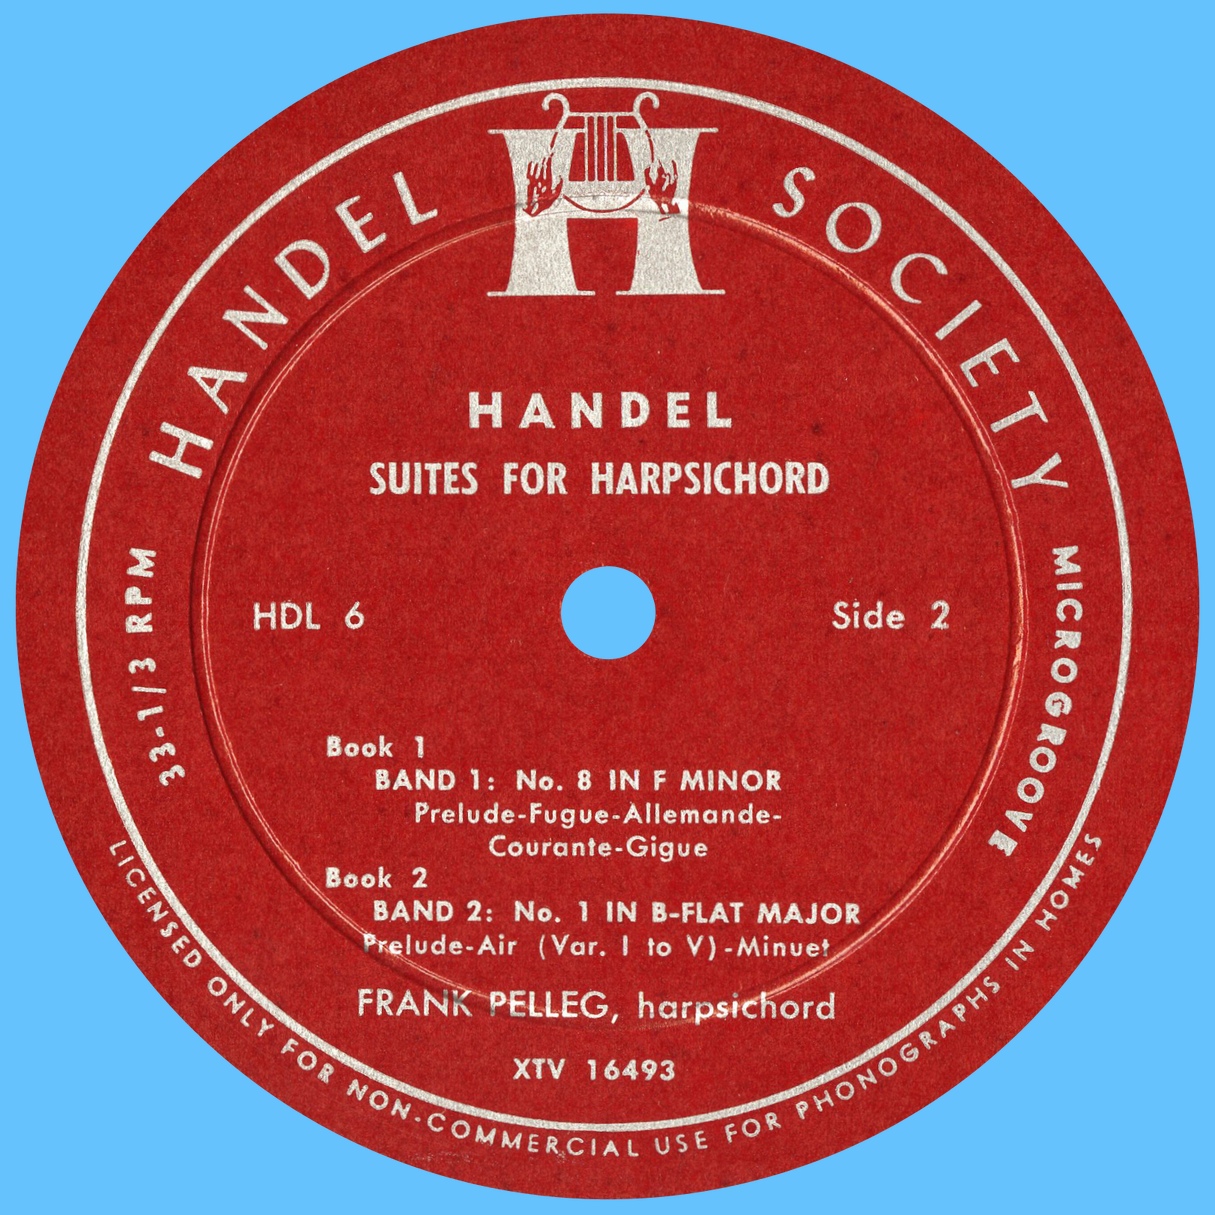 Étiquette verso du disque Handel Society HDL 6